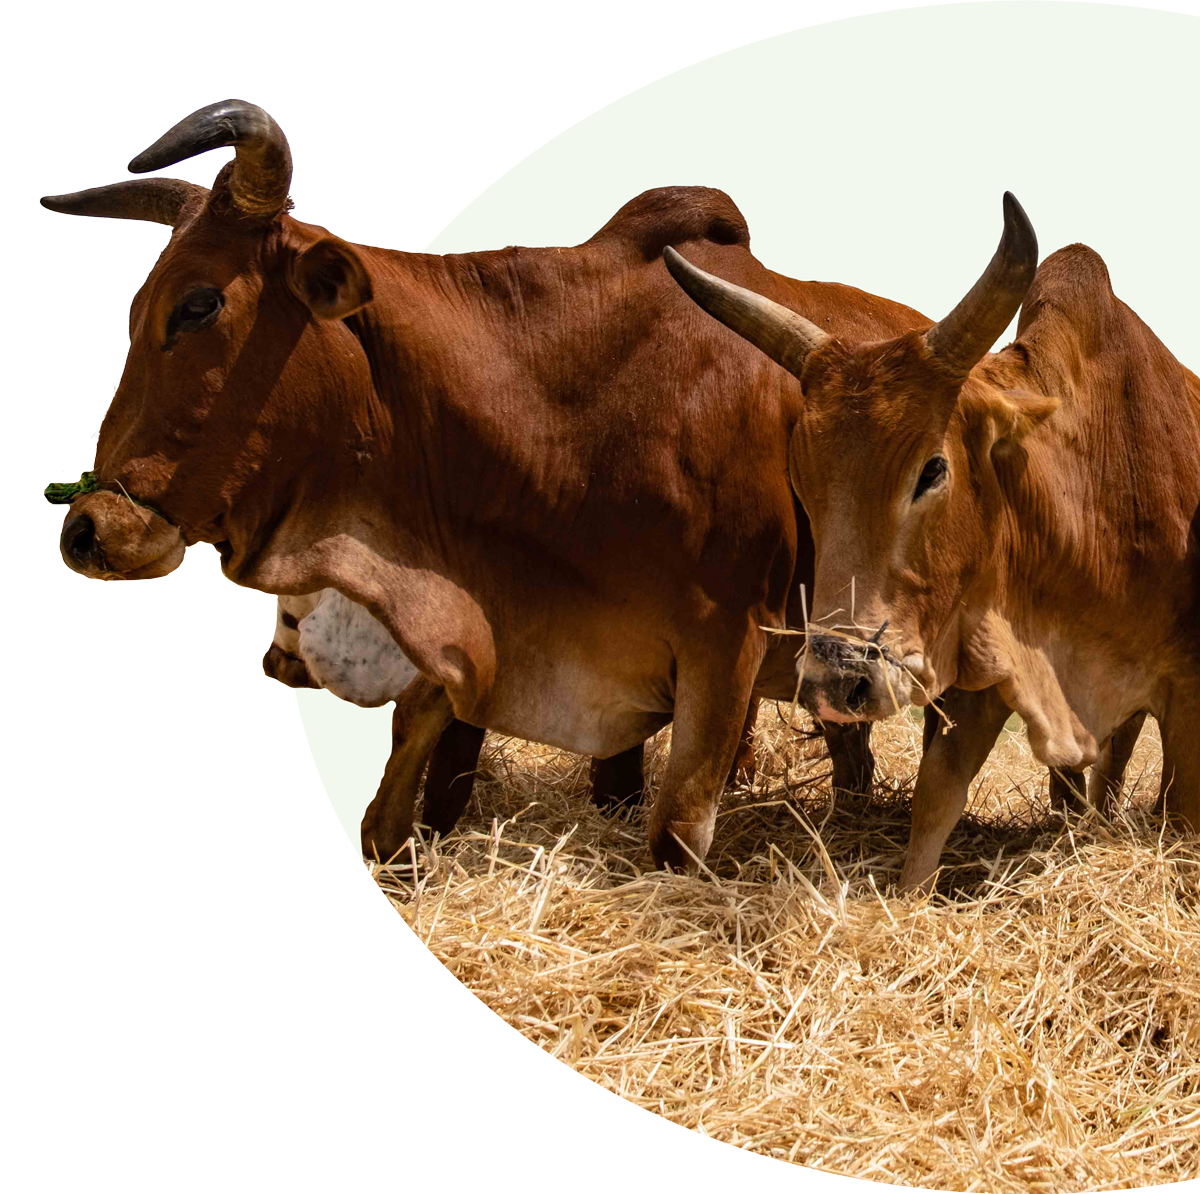 Brown cows on hay